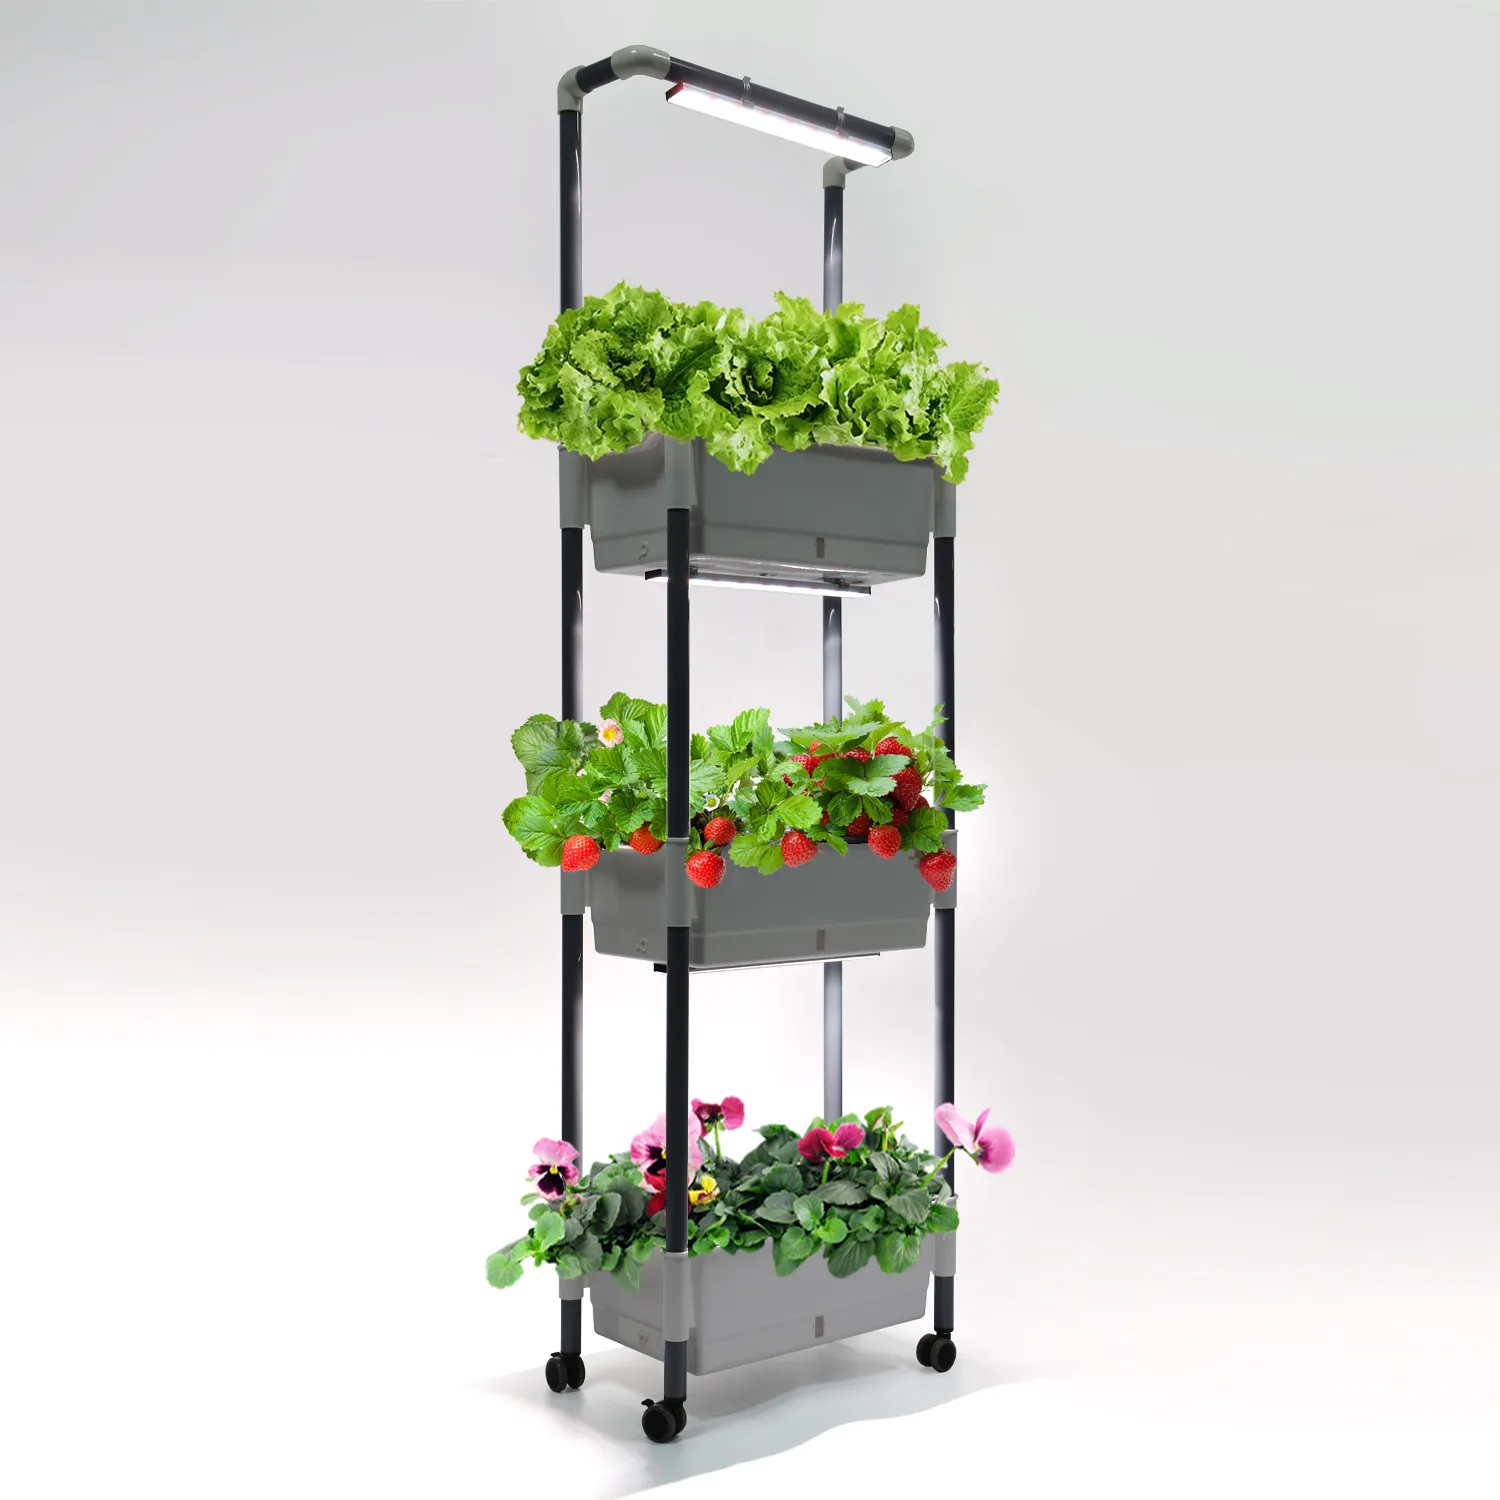 Binnentuin 3 Pack Vegetatieve Led Grow Light Systeem Zelfbesproeiing Bloempot Veget Tuinset Microgroene Groeiende Planter